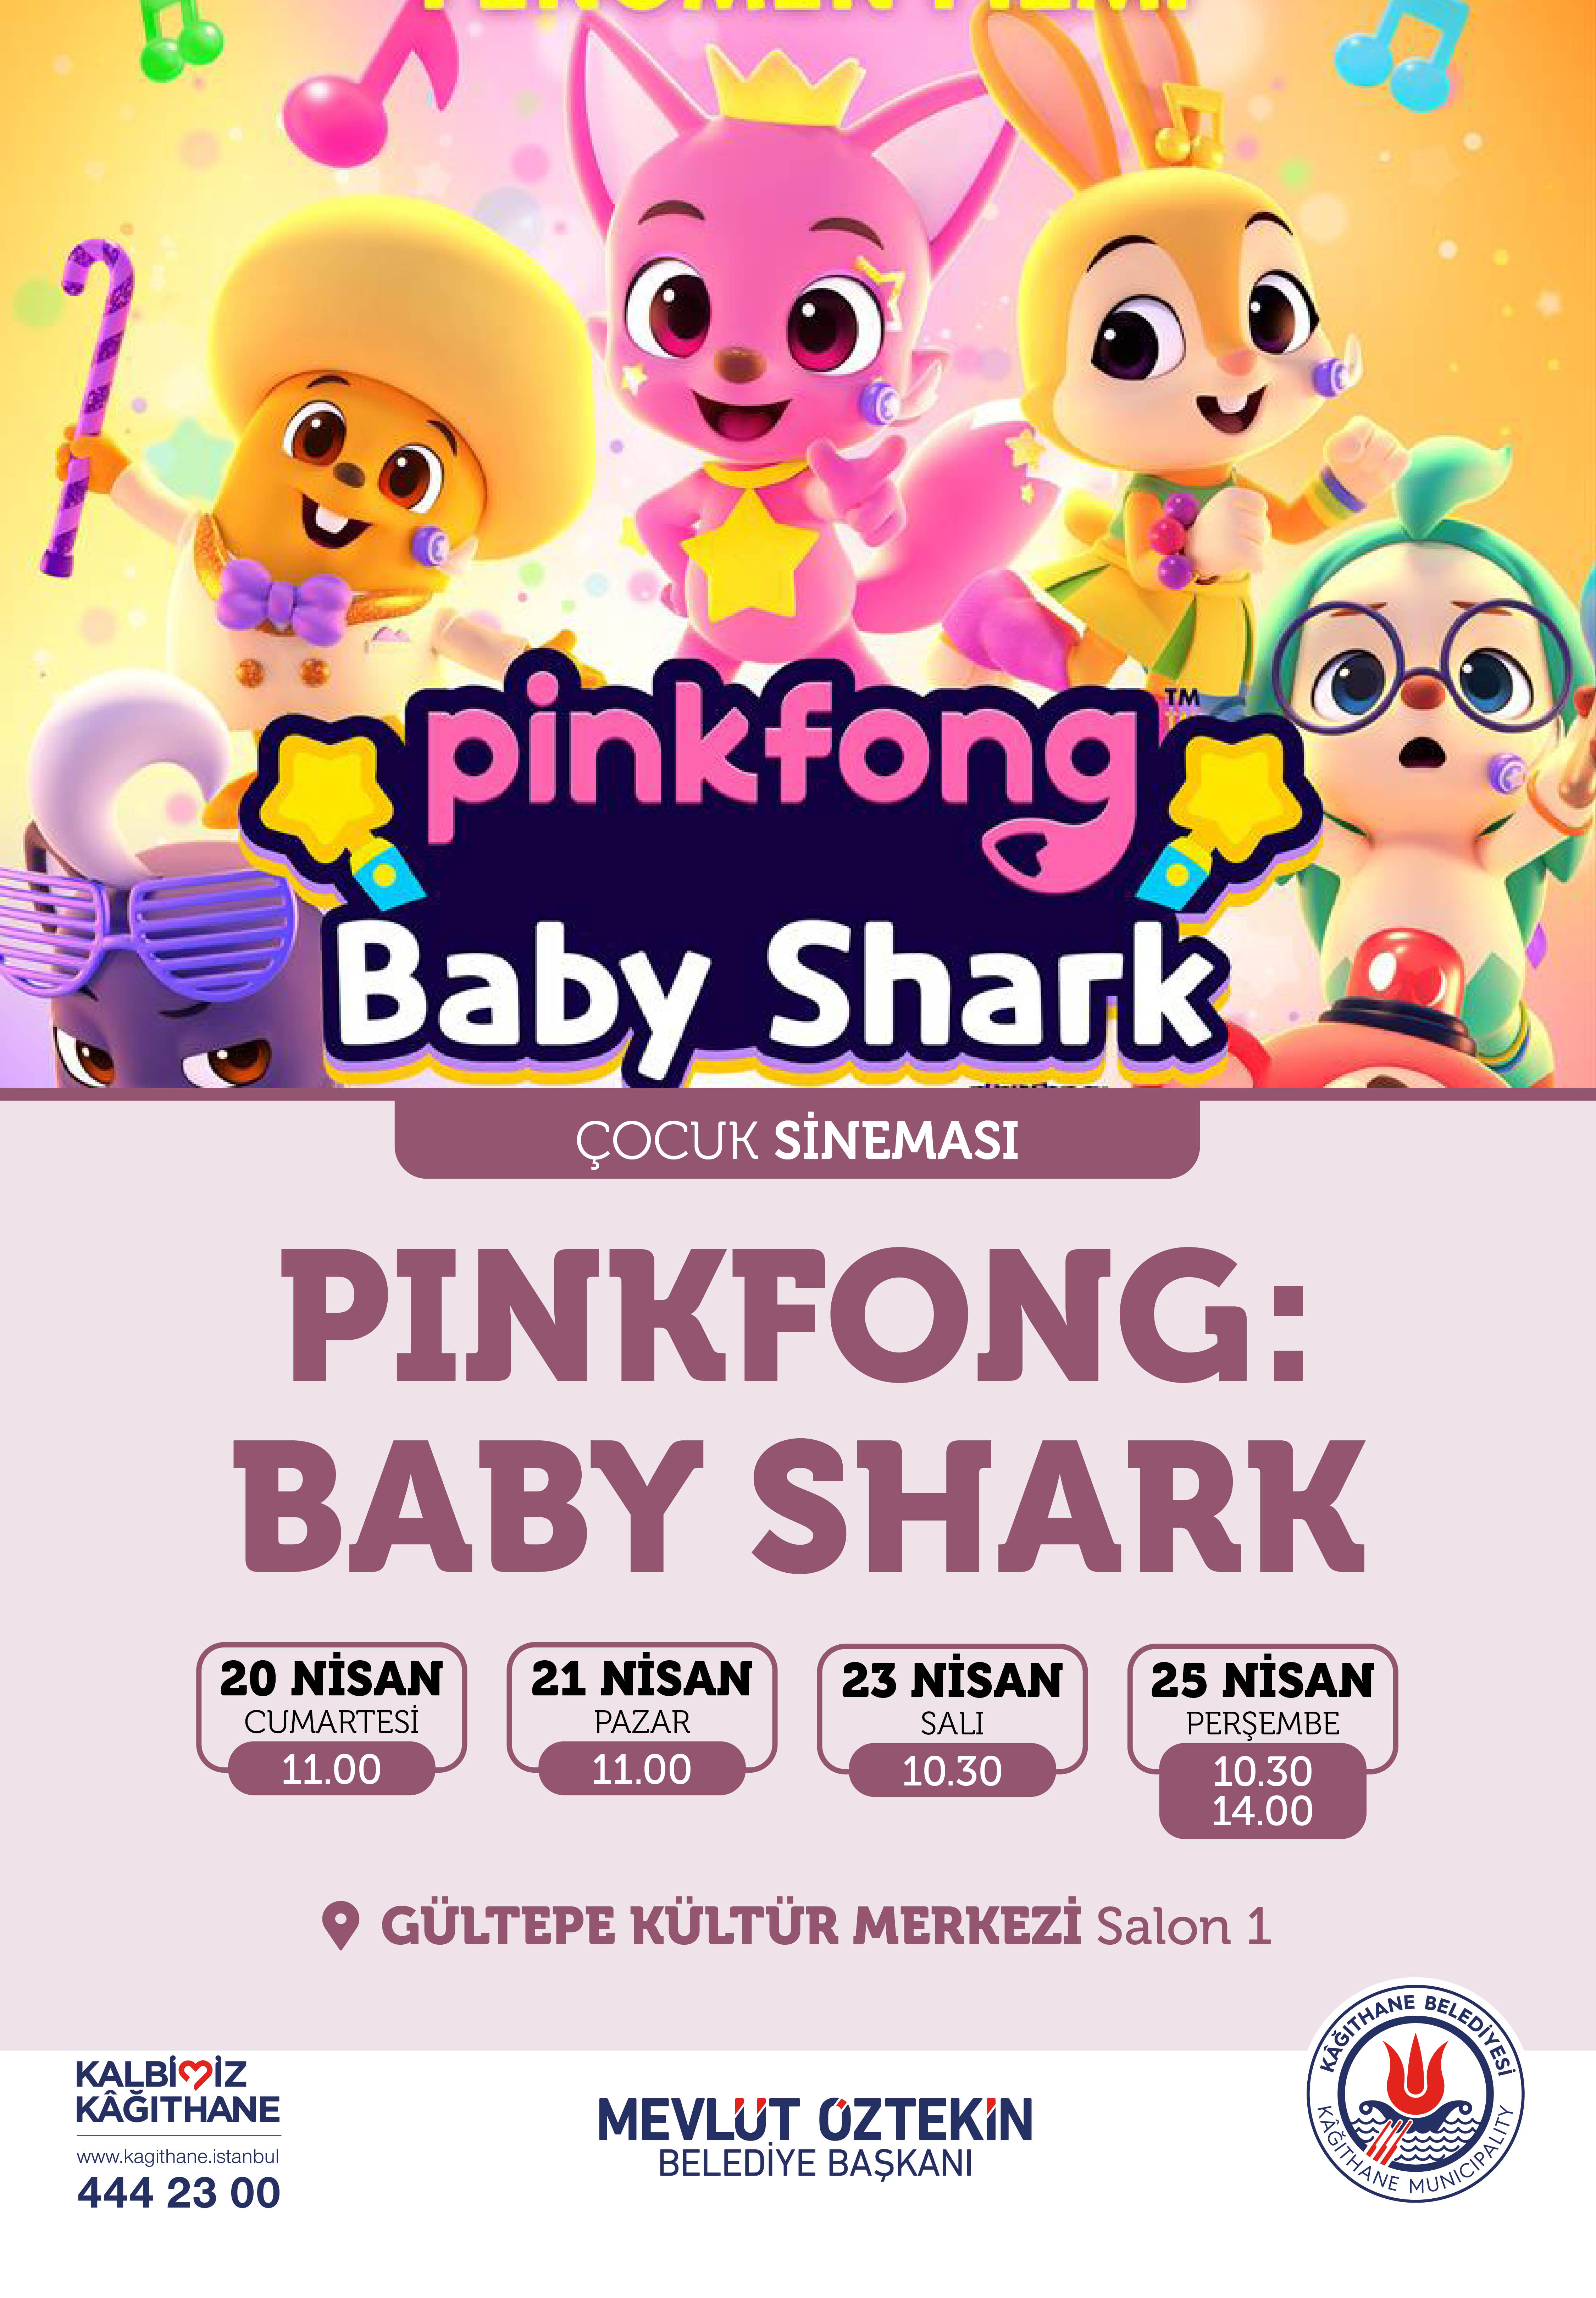 PINKFONG: BABY SHARK